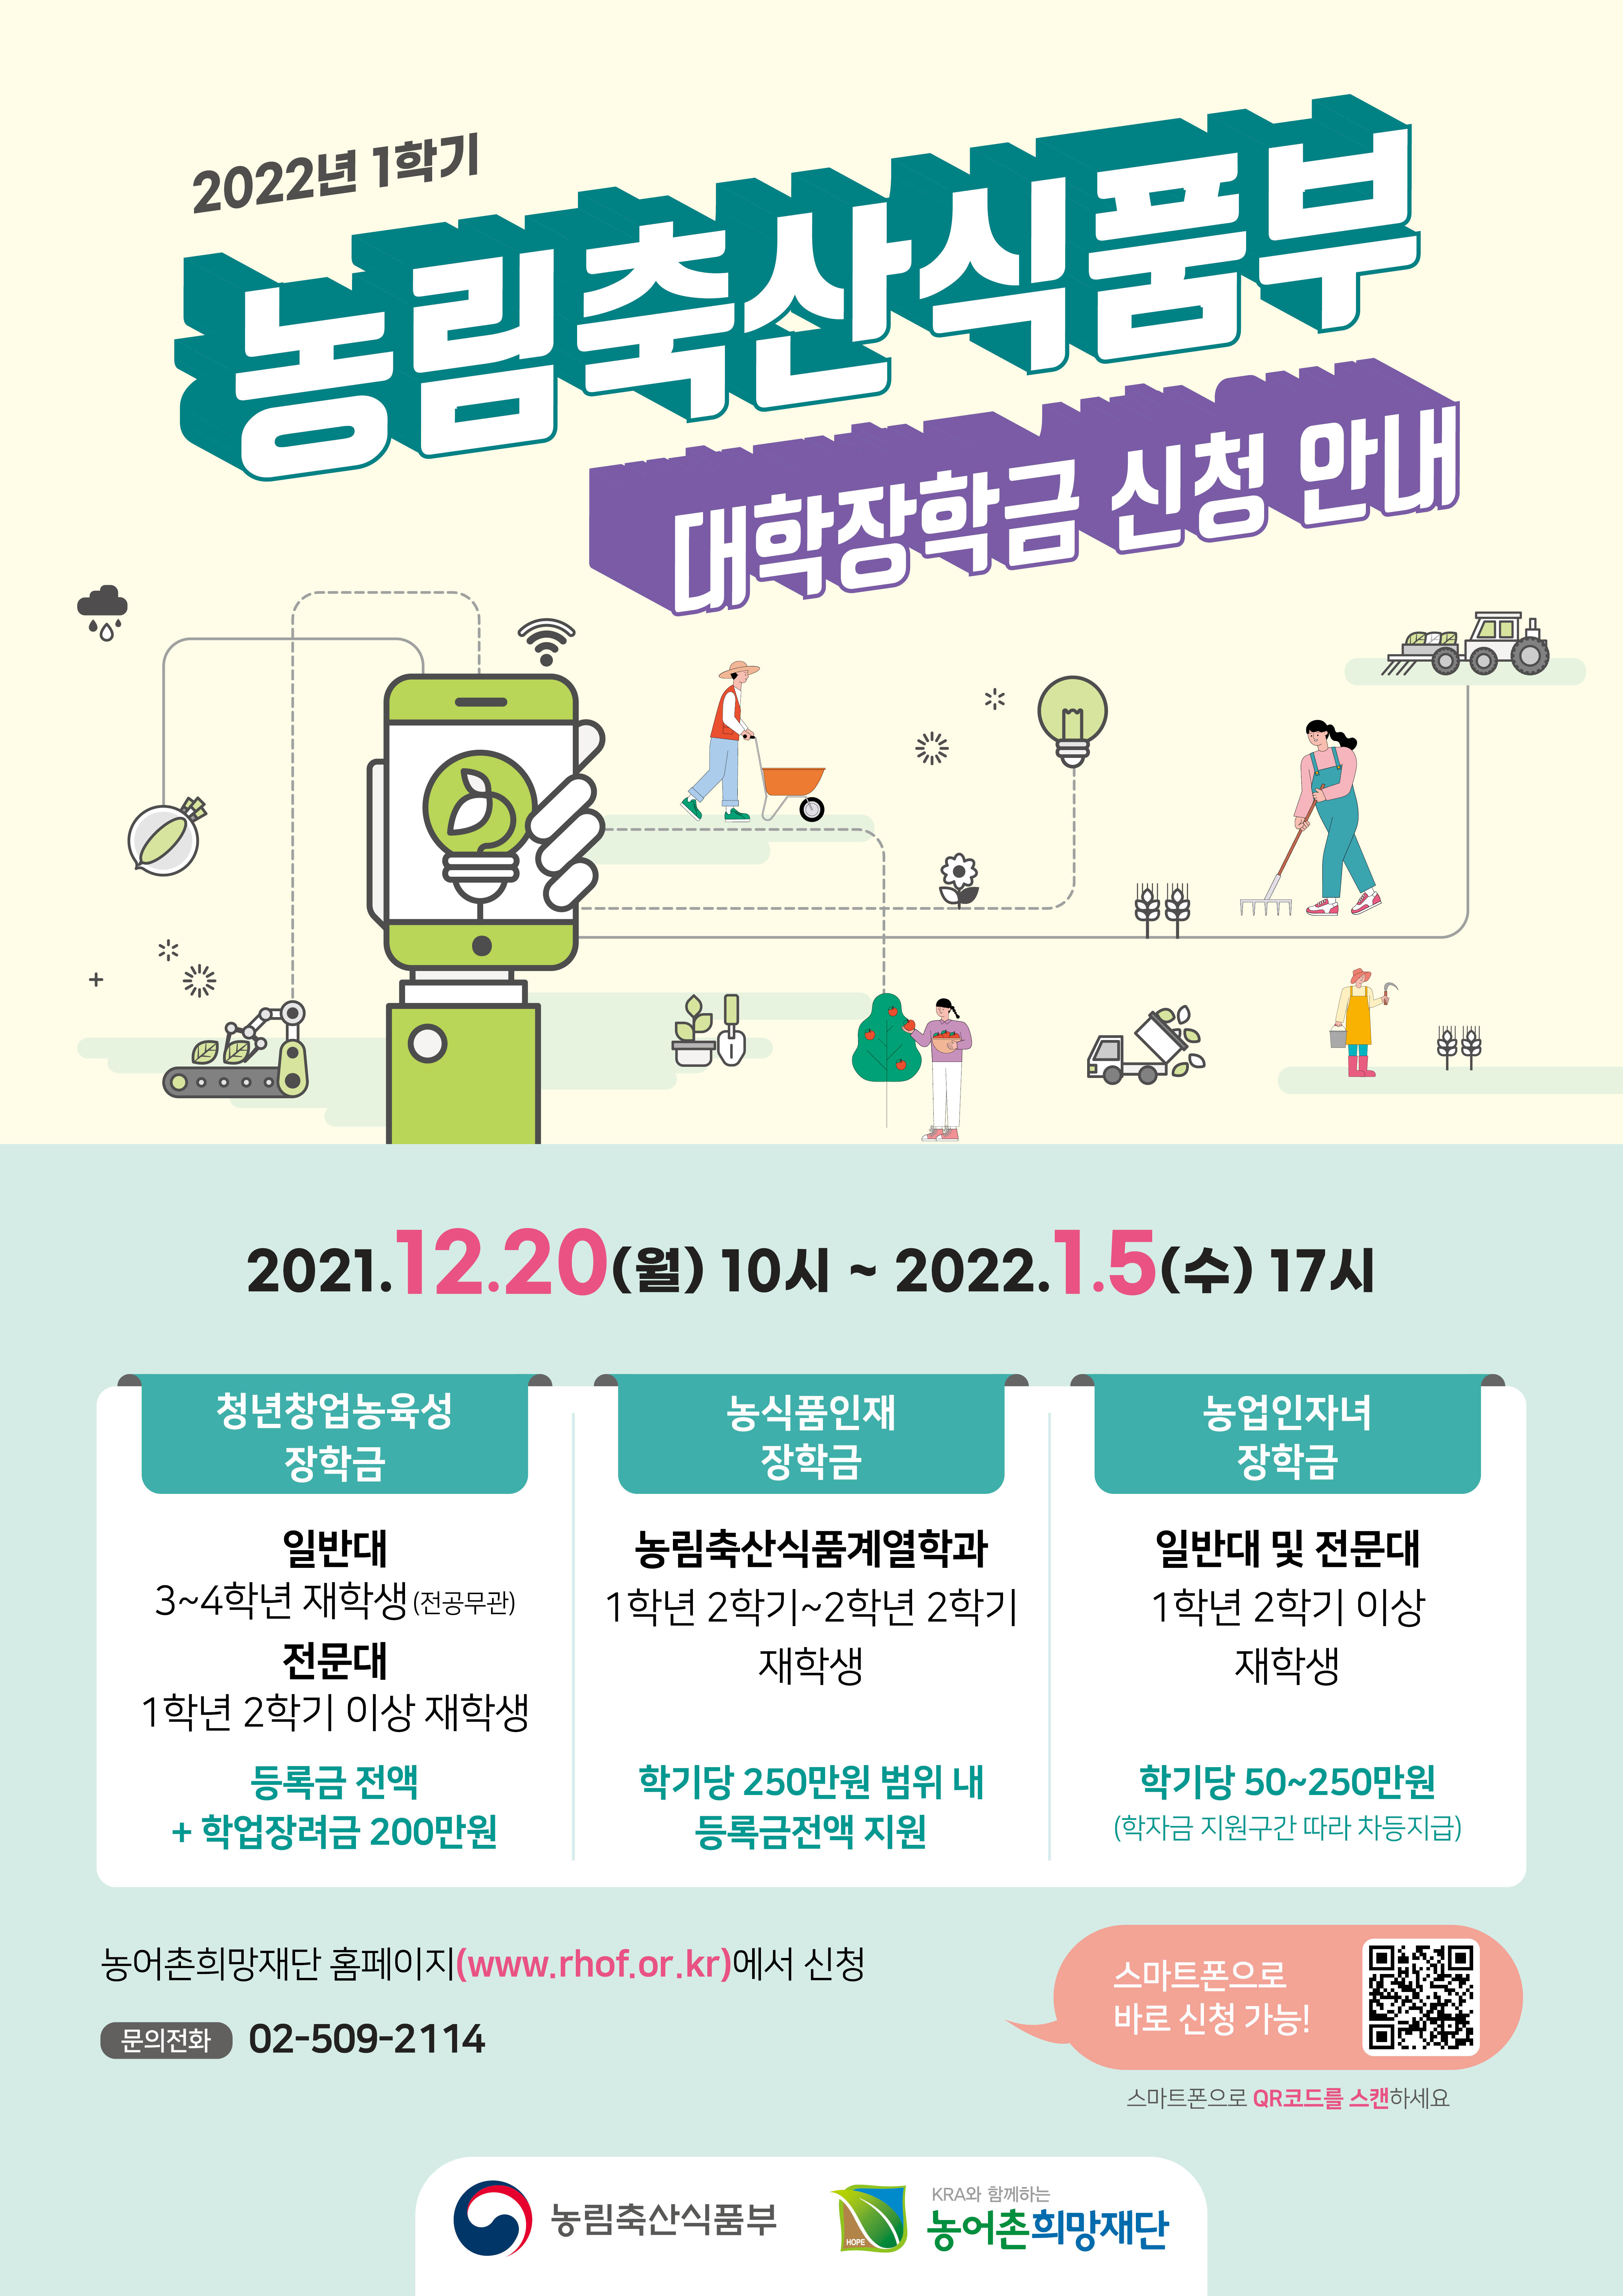 2022년 1학기 농림축산식품부 대학 장학금 지원사업 홍보 사진(1)